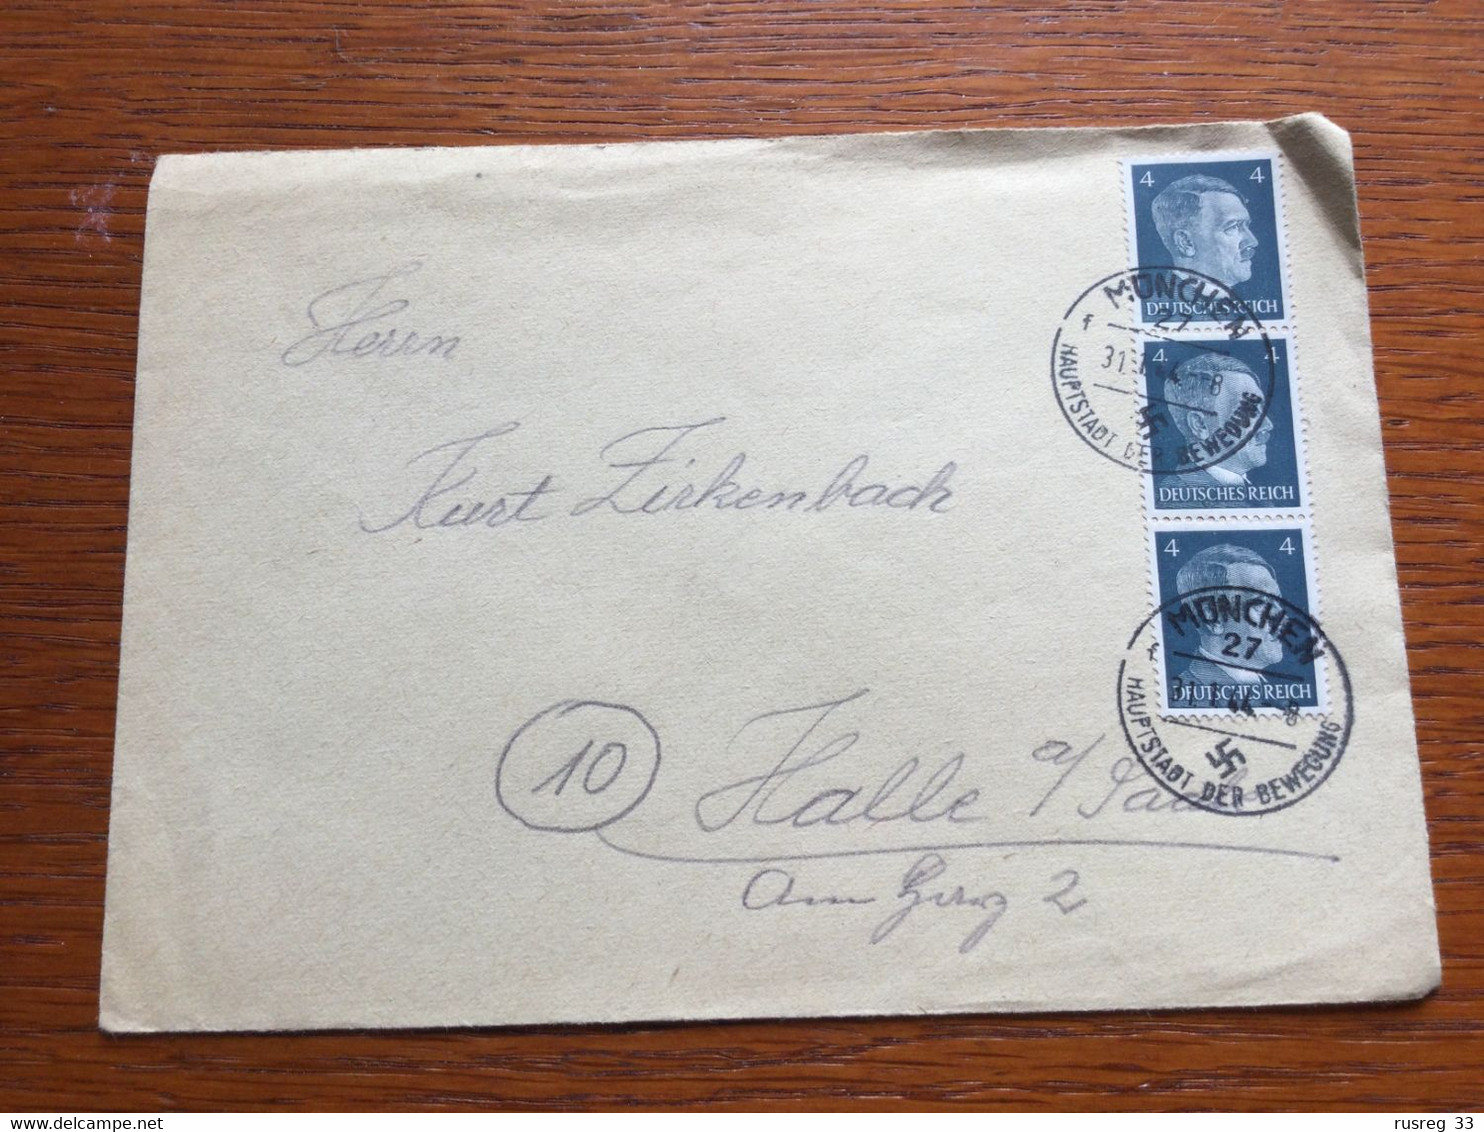 K24 Deutsches Reich 1944 Brief Von München - Lettres & Documents